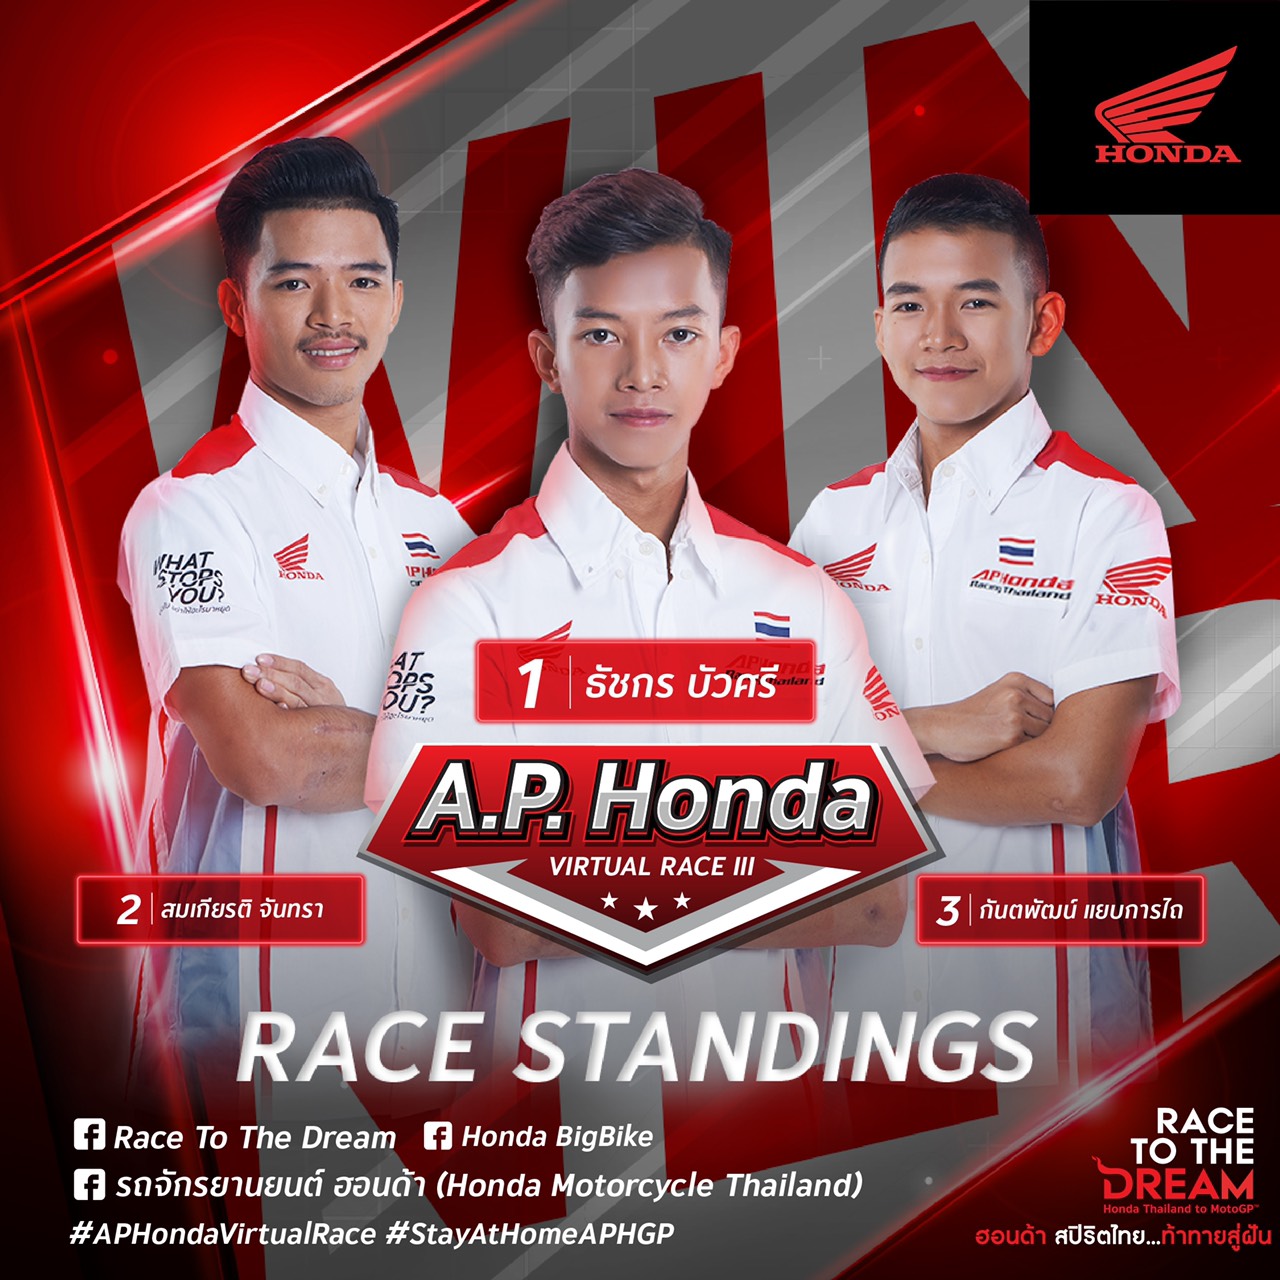 “ก้องส์-ธัชกร” คว้าแชมป์สนาม 3 ผงาดจ่าฝูง A.P. Honda Virtual Race